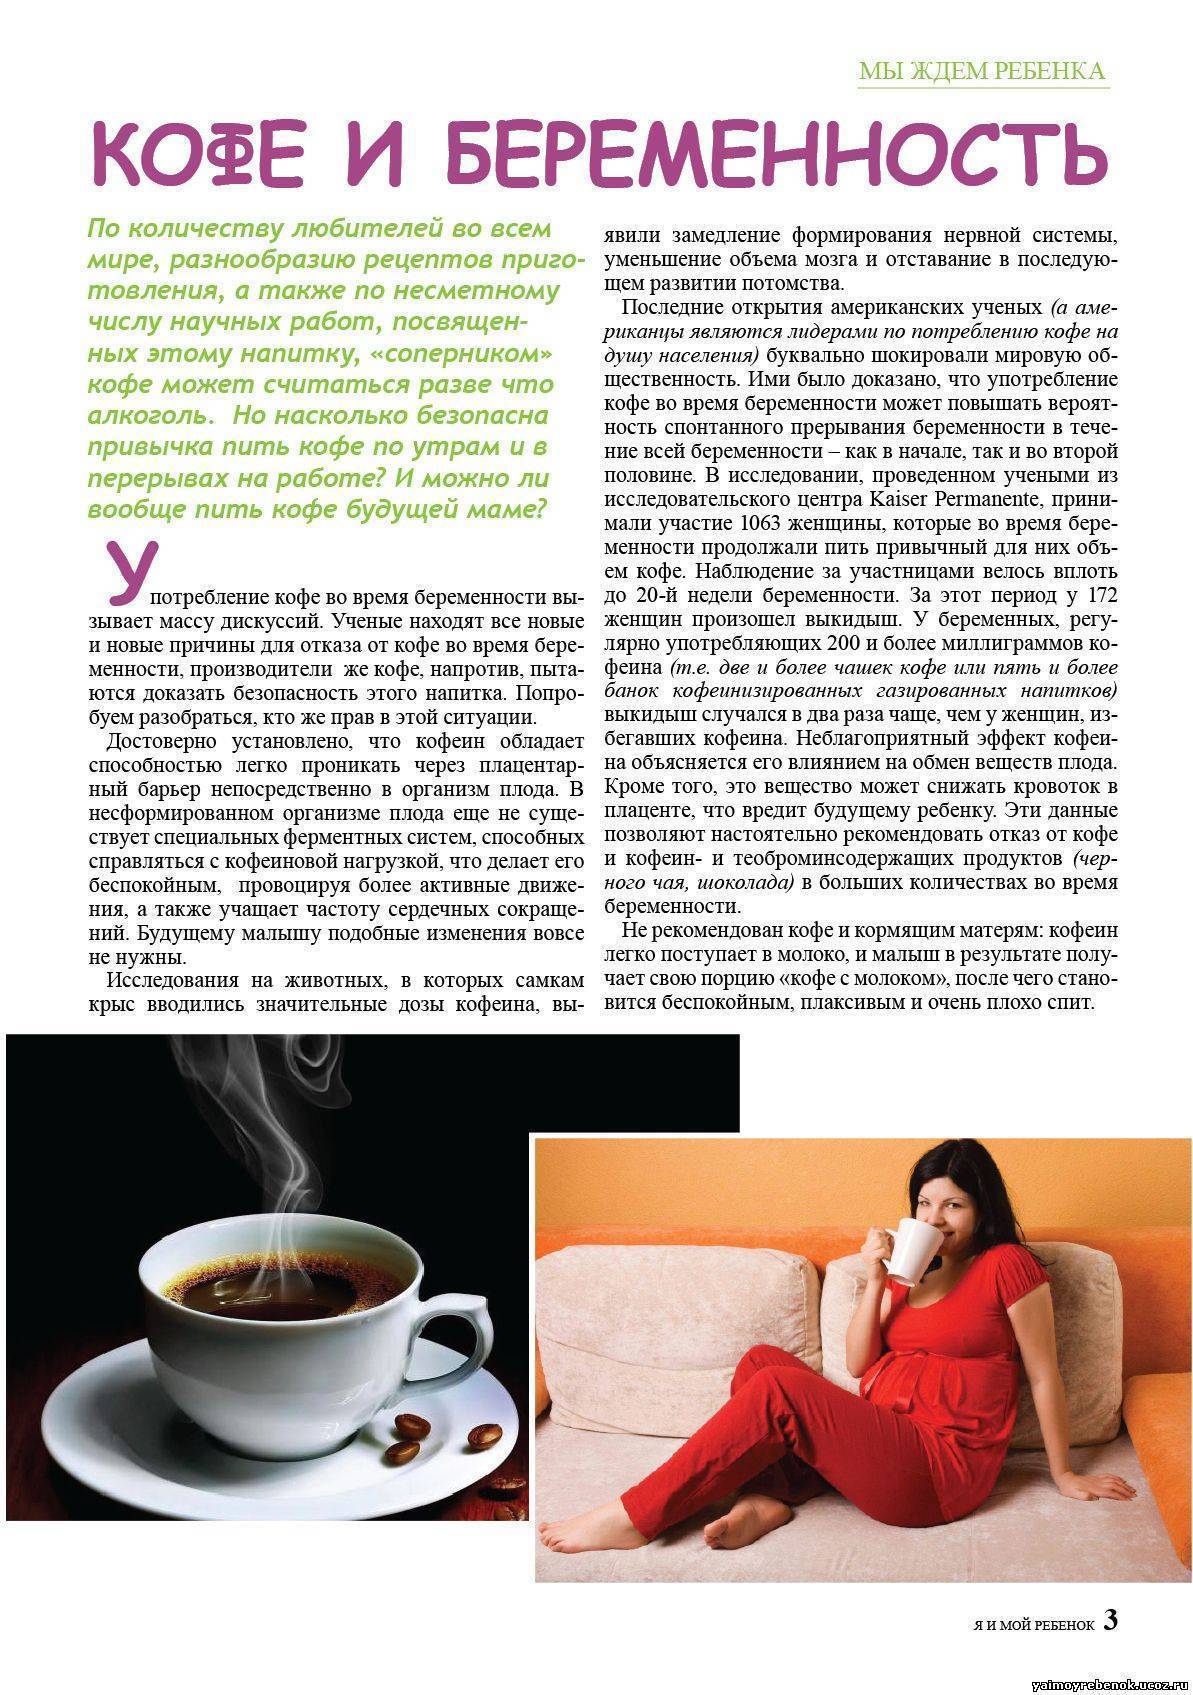 Кофе во время беременности: полный гид по всем «можно» и «нельзя» - познавательно на tea.ru